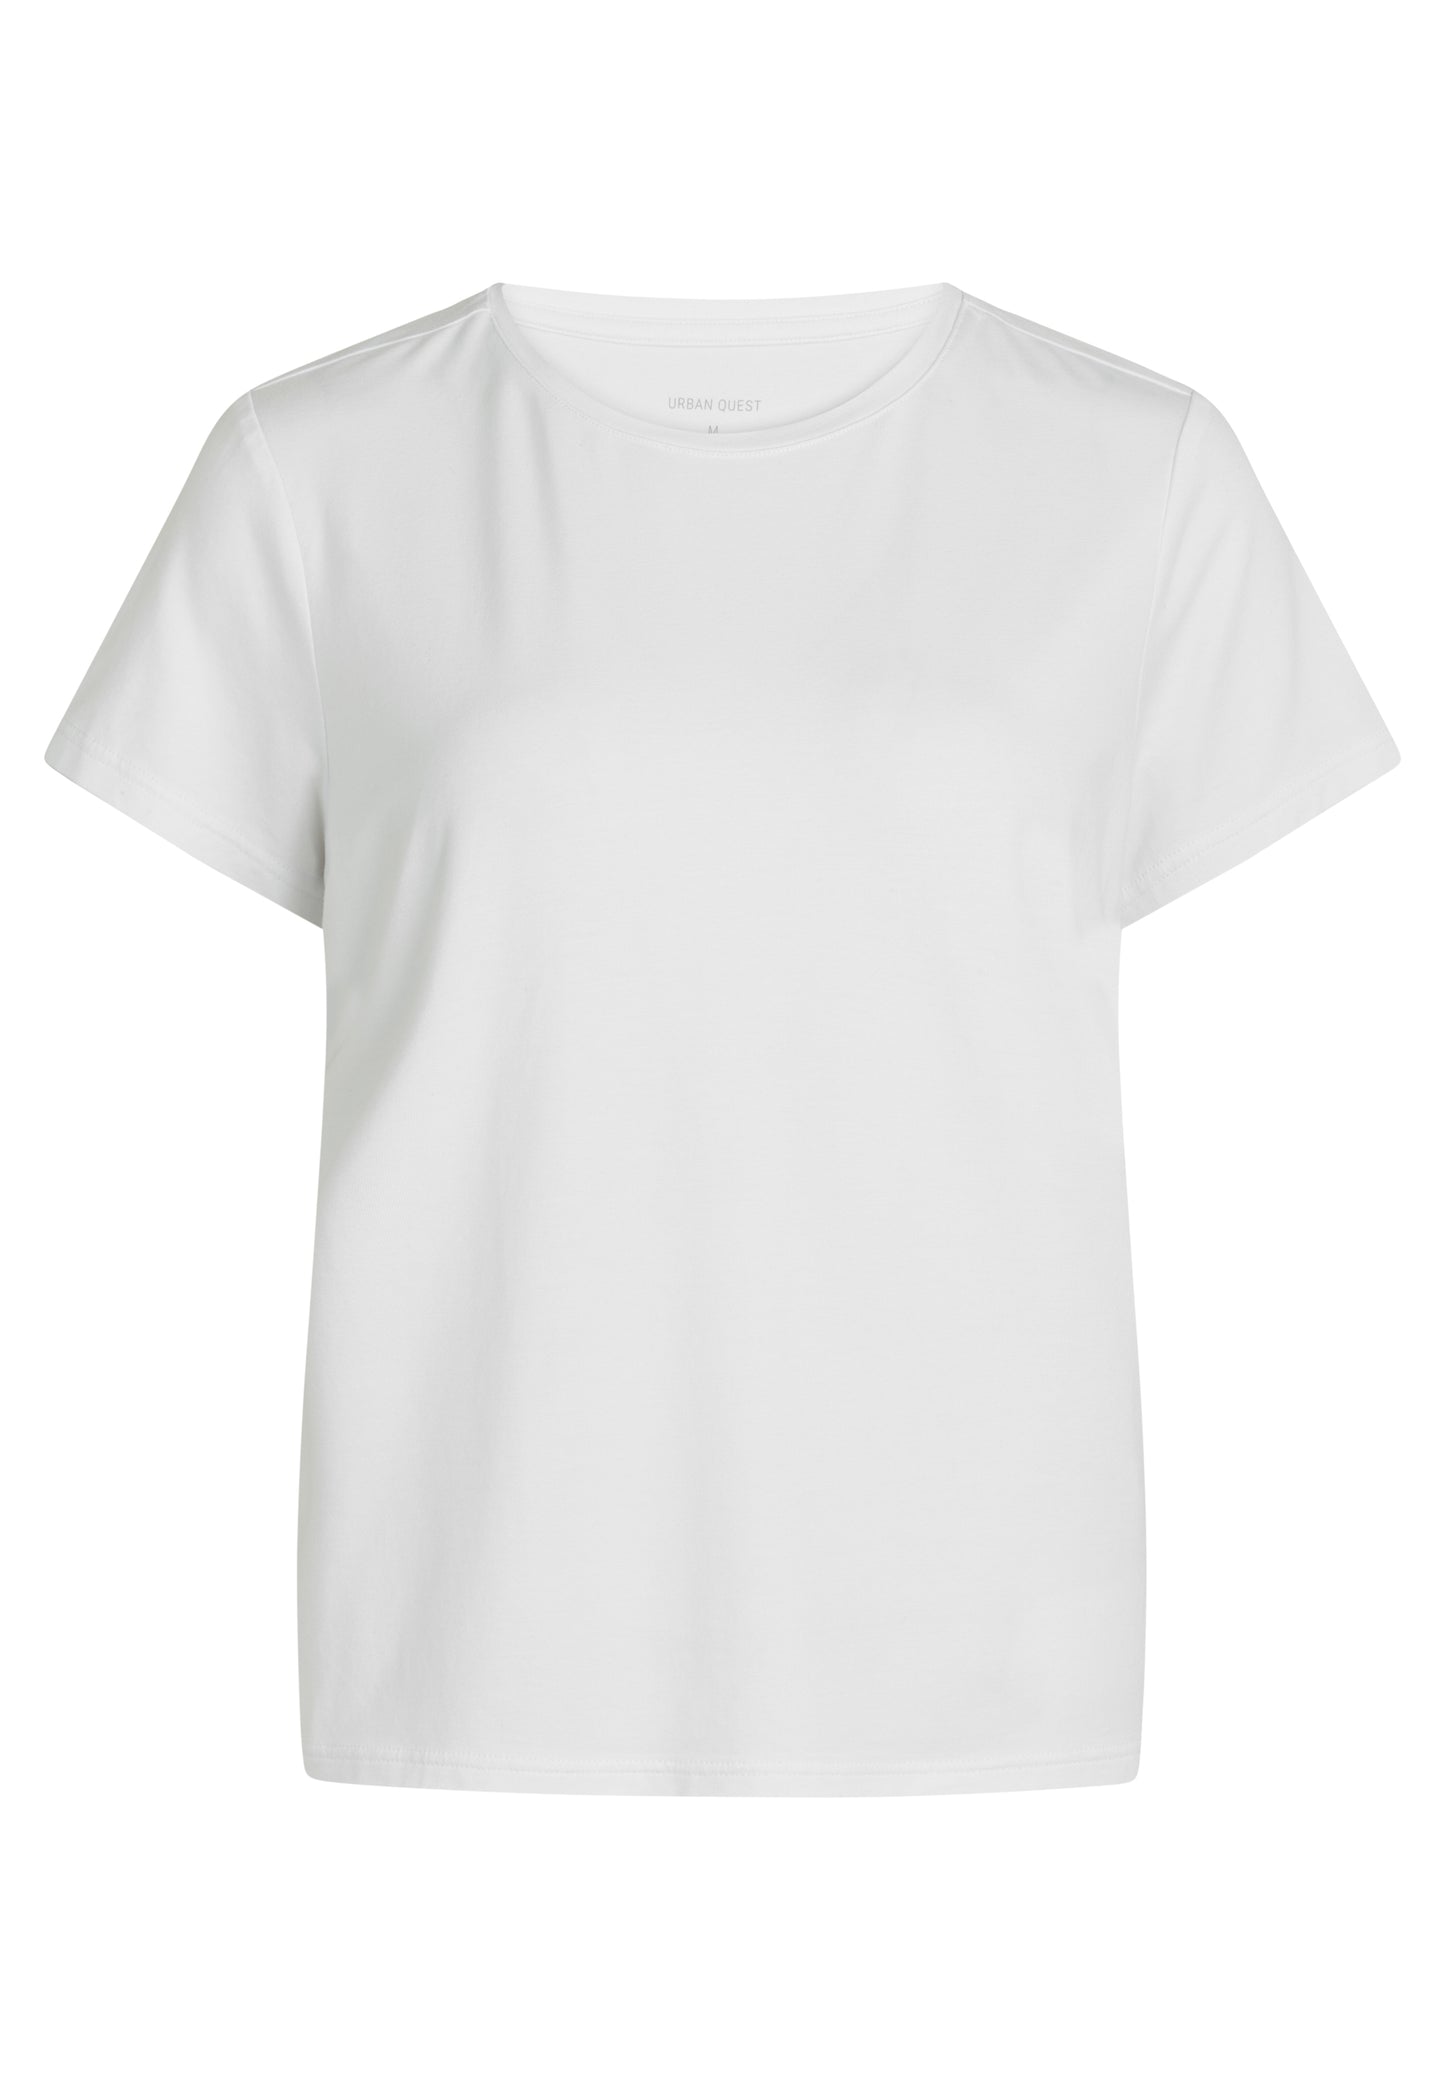 Bambus T-shirt til kvinder hvid